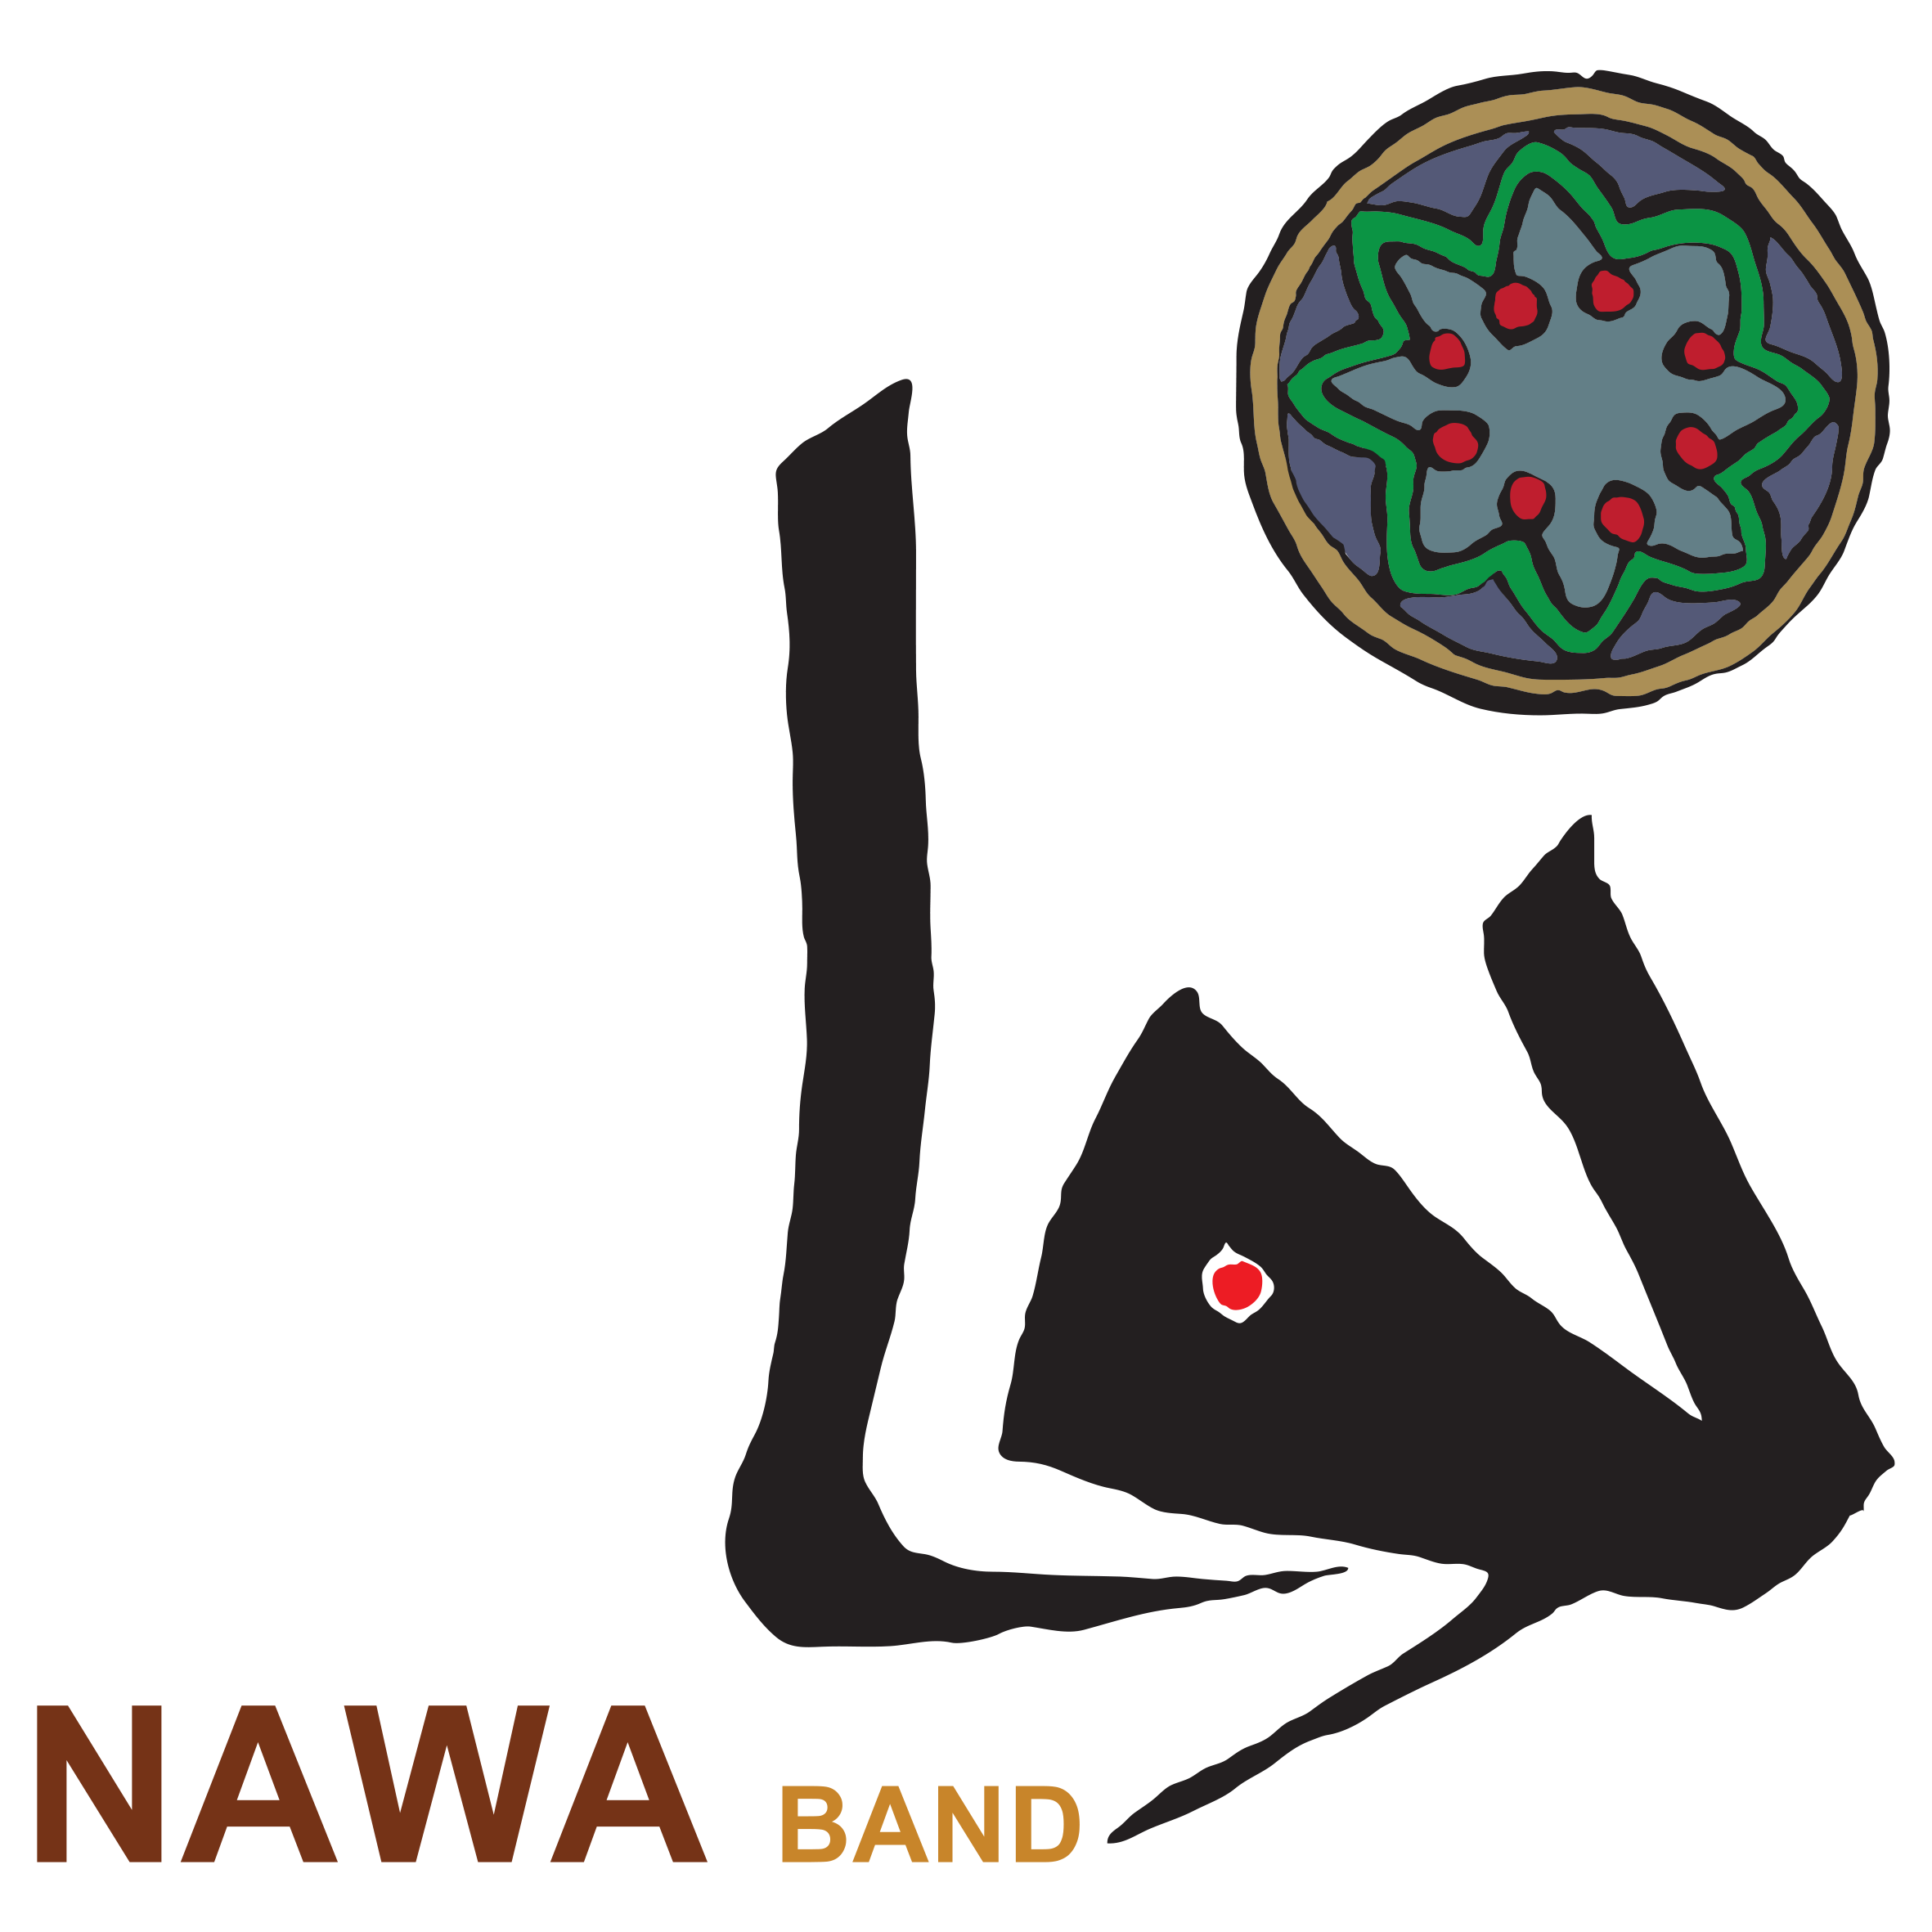 NAWA BAND